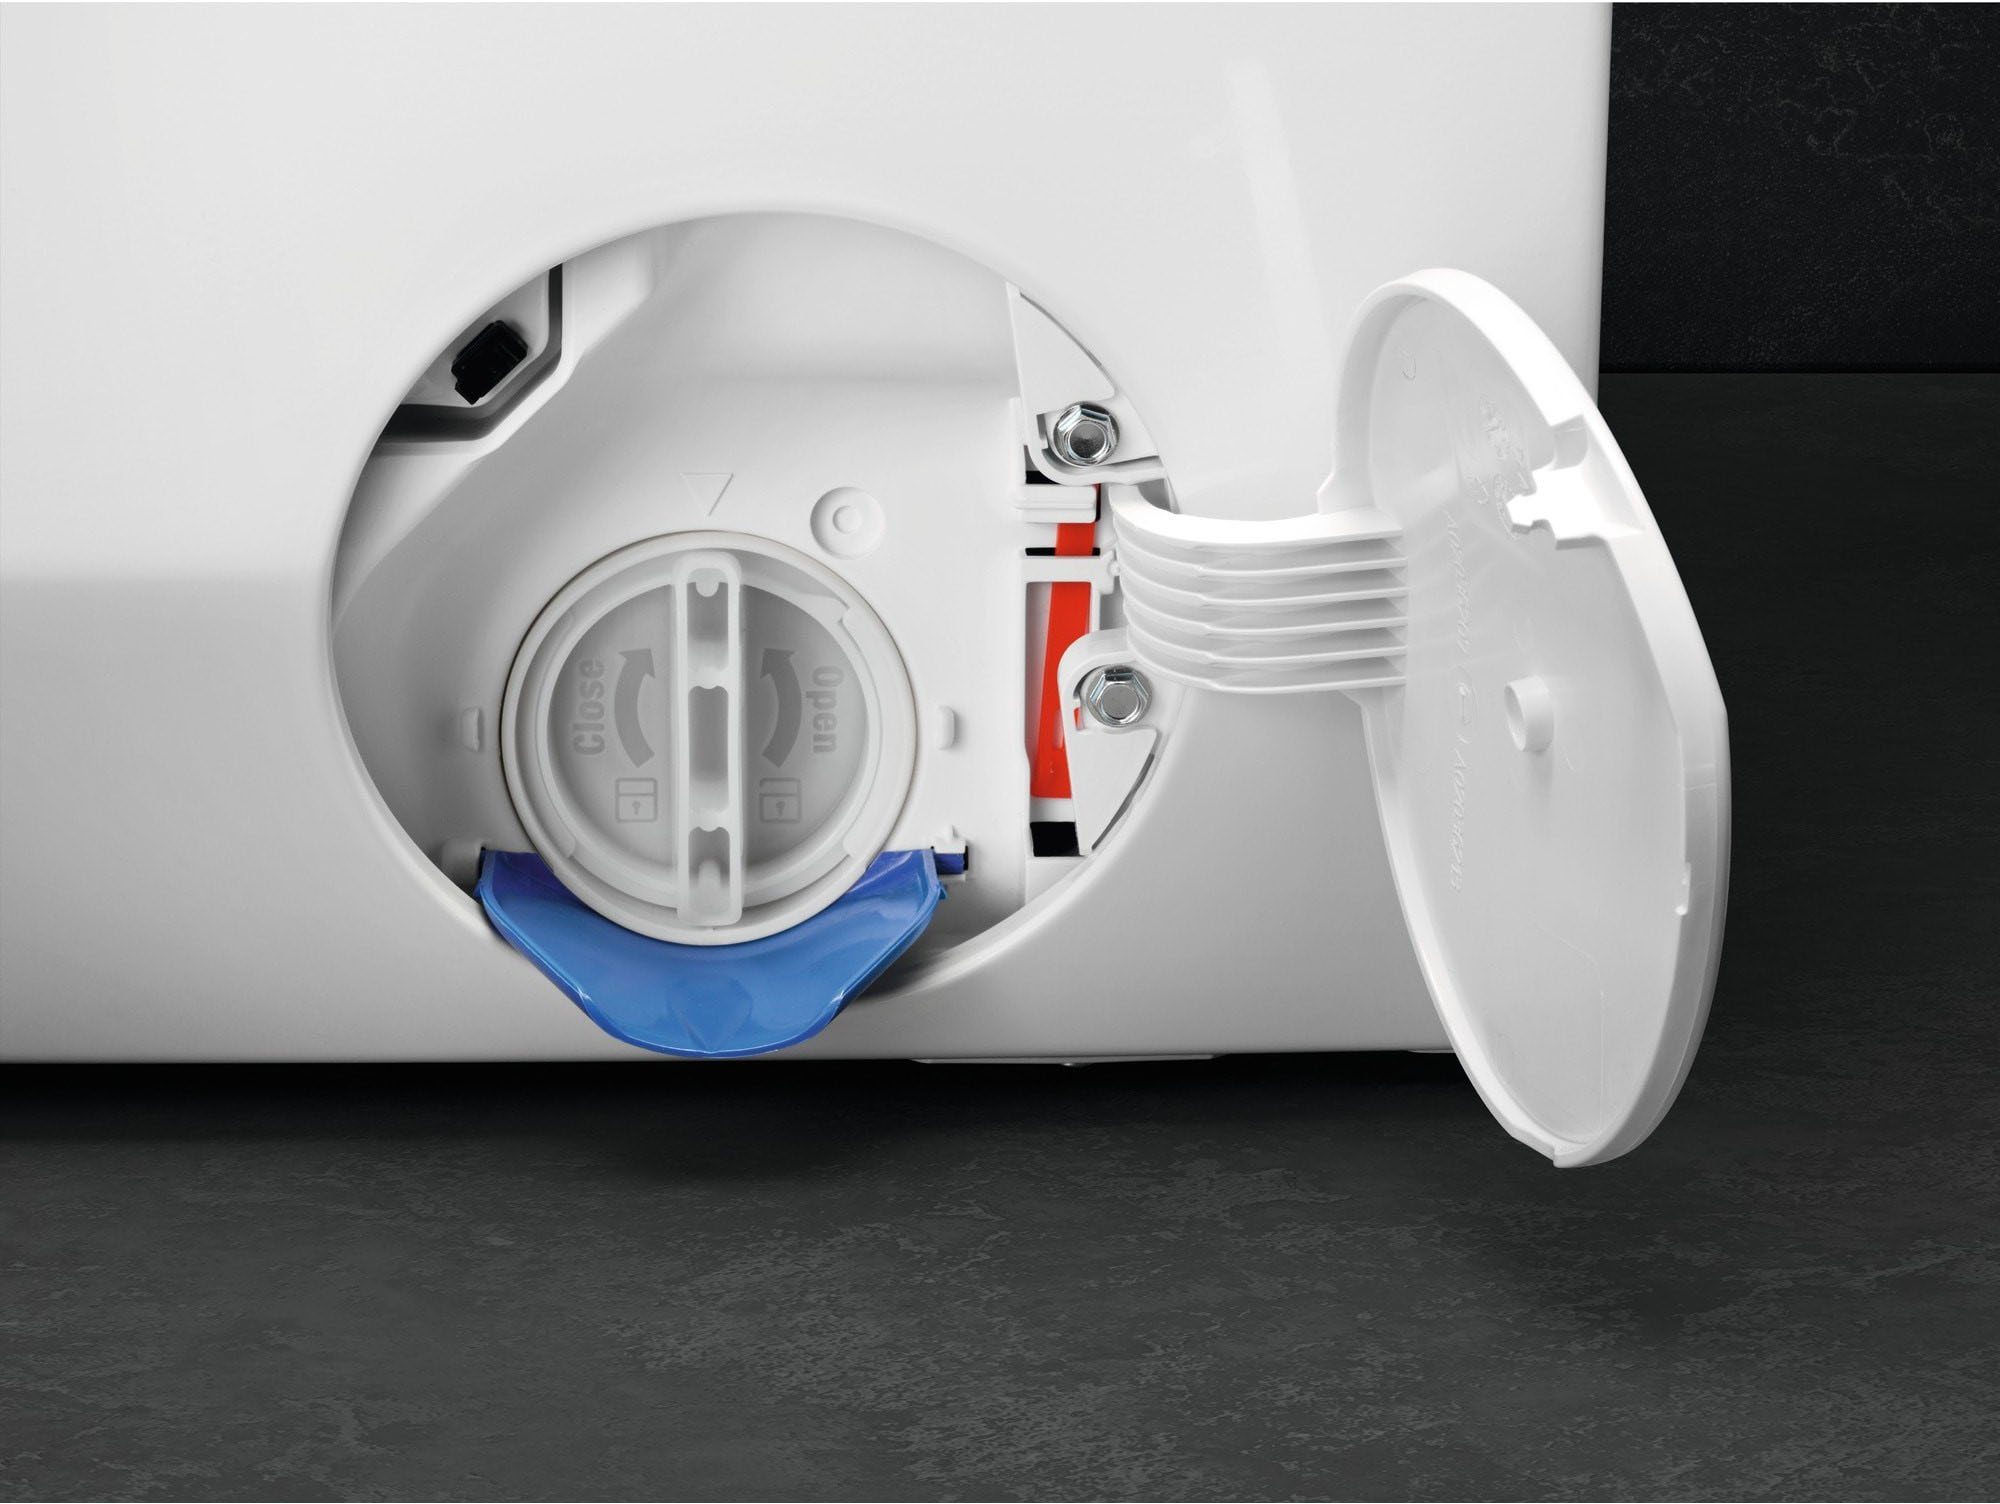 & kg, AEG Waschmaschine Wasserverbrauch U/min, ProSteam Dampf-Programm 1400 LR7E75400, - für 96 Wifi 10 % weniger